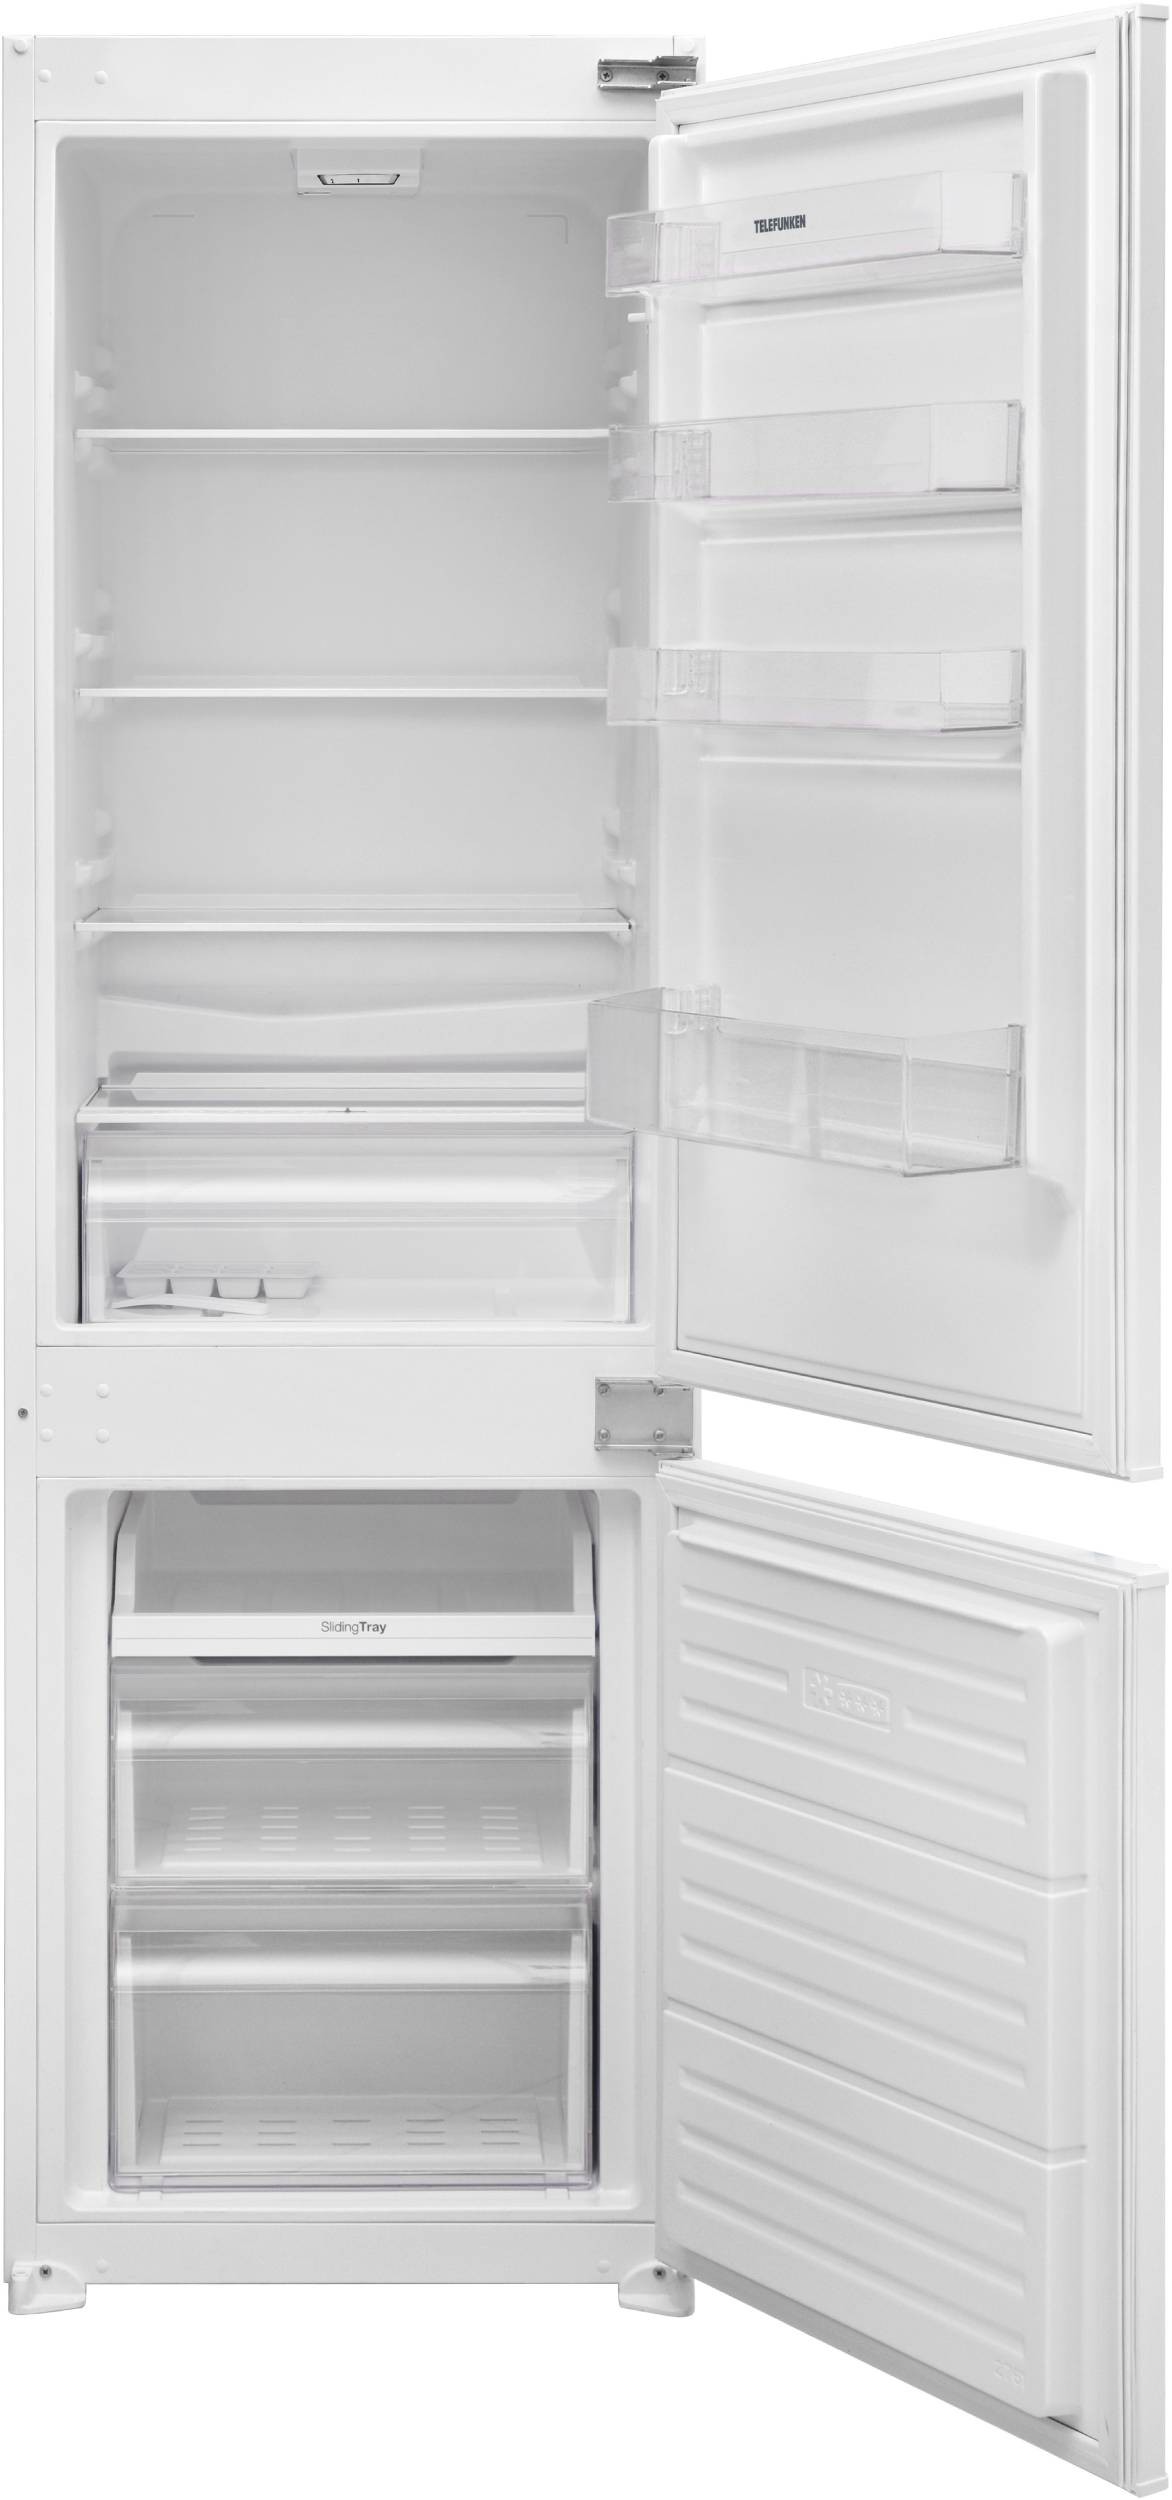 TELEFUNKEN Réfrigérateur congélateur encastrable  - TKRCB251BIE